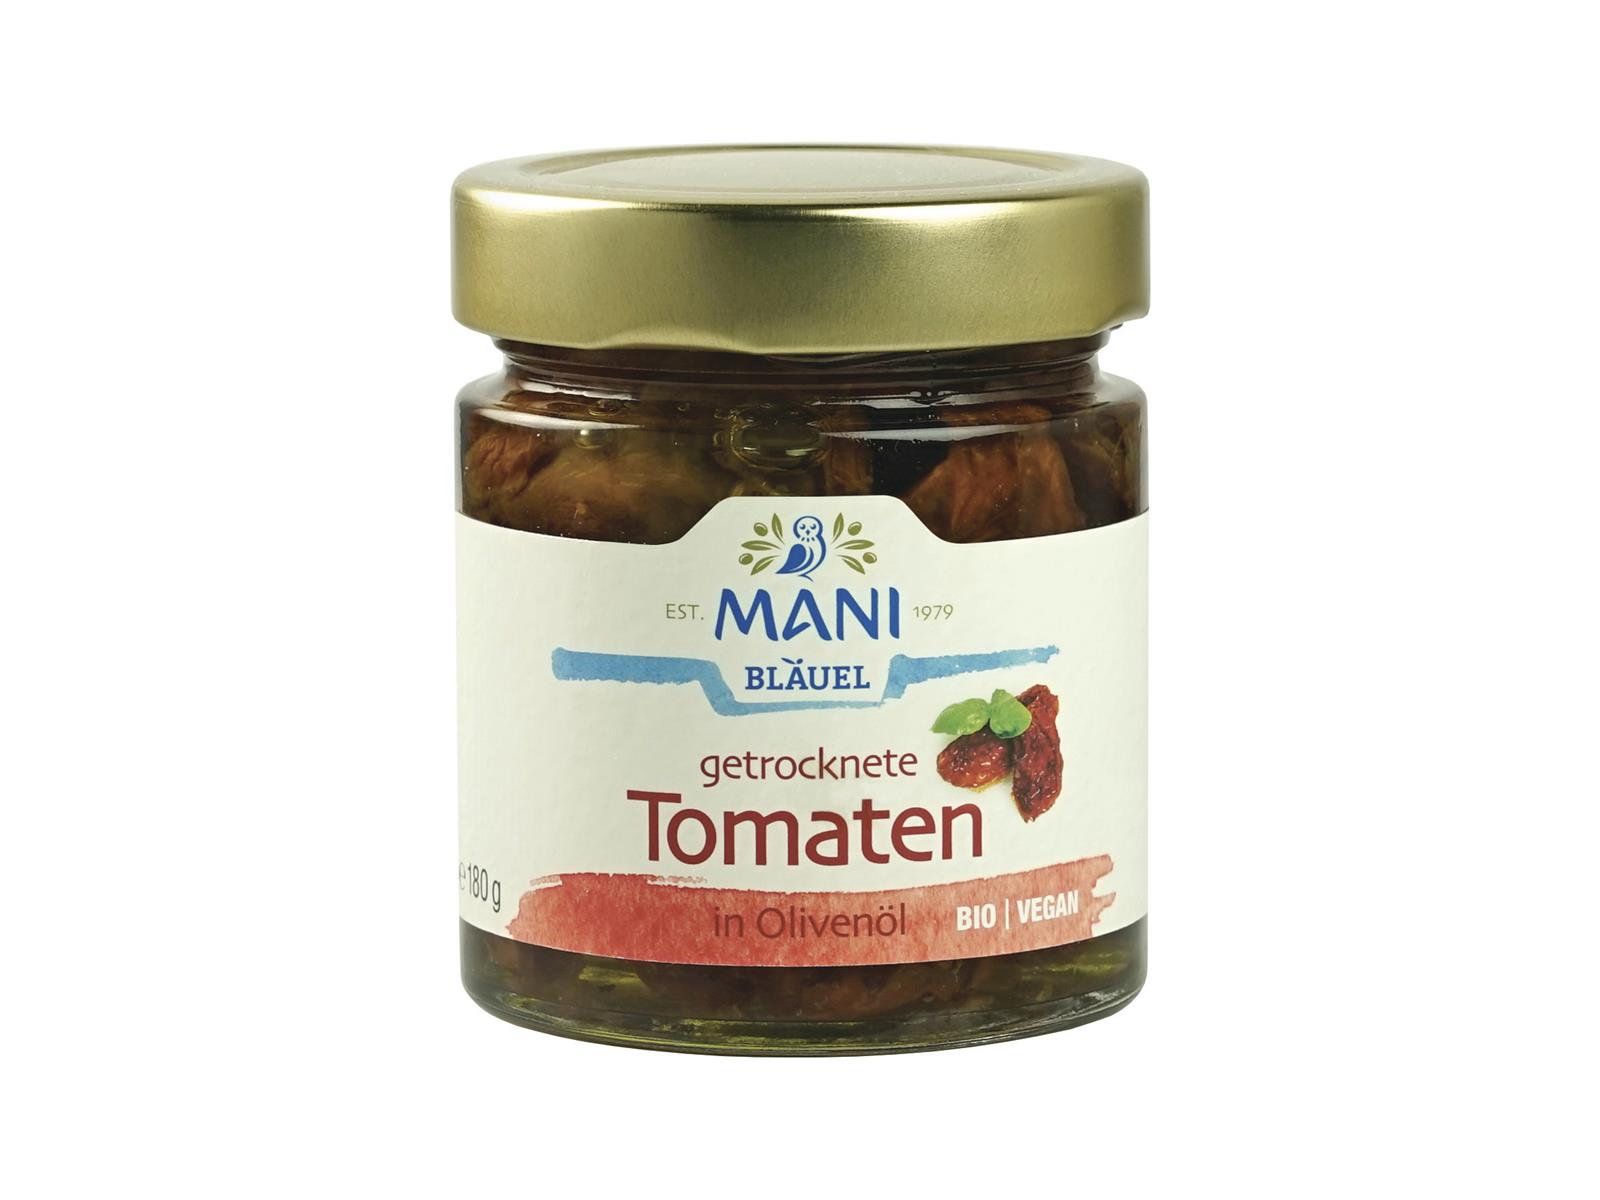 Mani Bläuel Getrocknete Tomaten in Olivenöl 180g